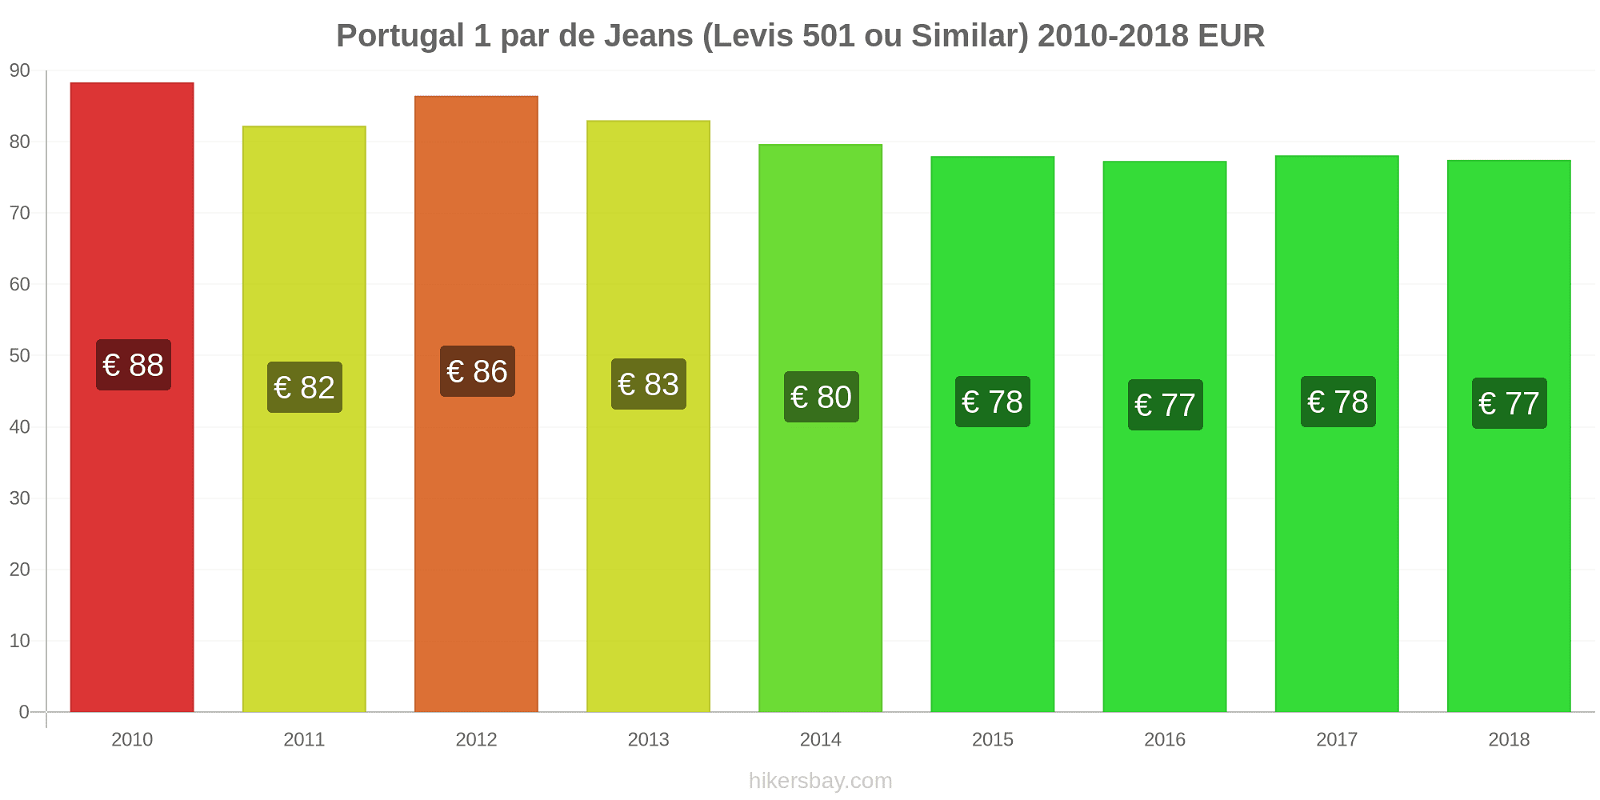 Portugal mudanças de preços 1 par de jeans (Levis 501 ou similares) hikersbay.com